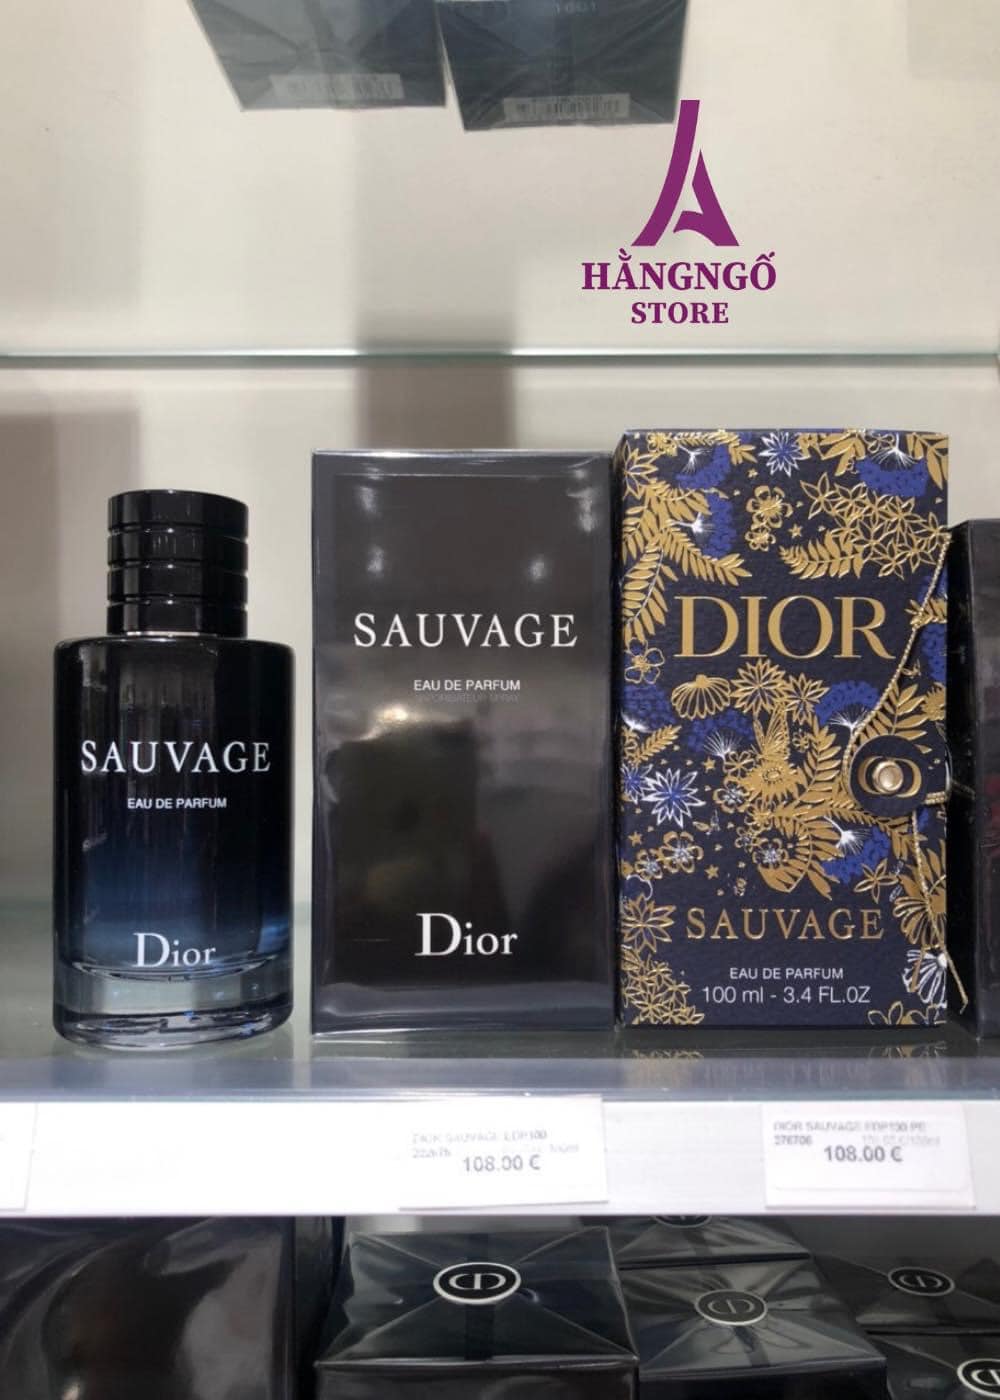 Dior  Sauvage  Sauvage Parfum  DIOR  Smith  Caugheys  Smith   Caugheys